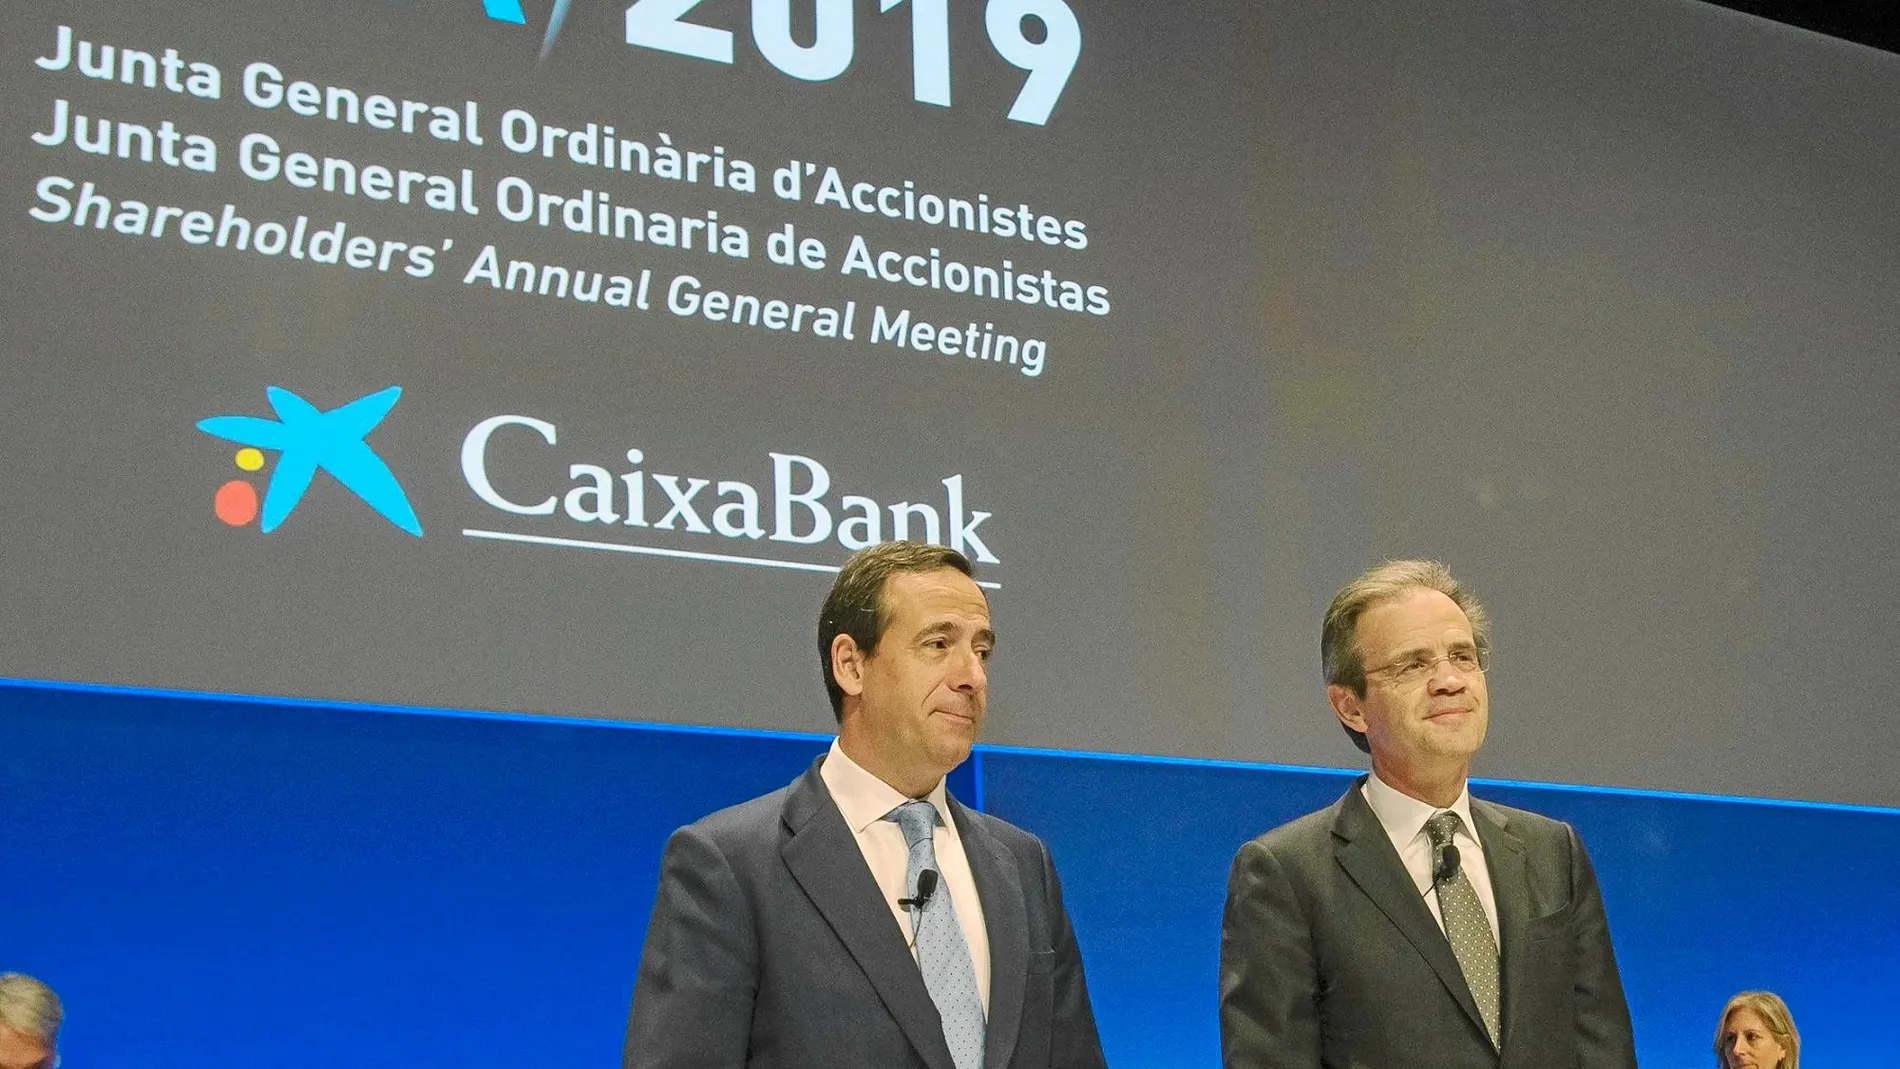 El consejero delegado de CaixaBank, Gonzalo Gortázar, y el presidente de la entidad, Jordi Gual